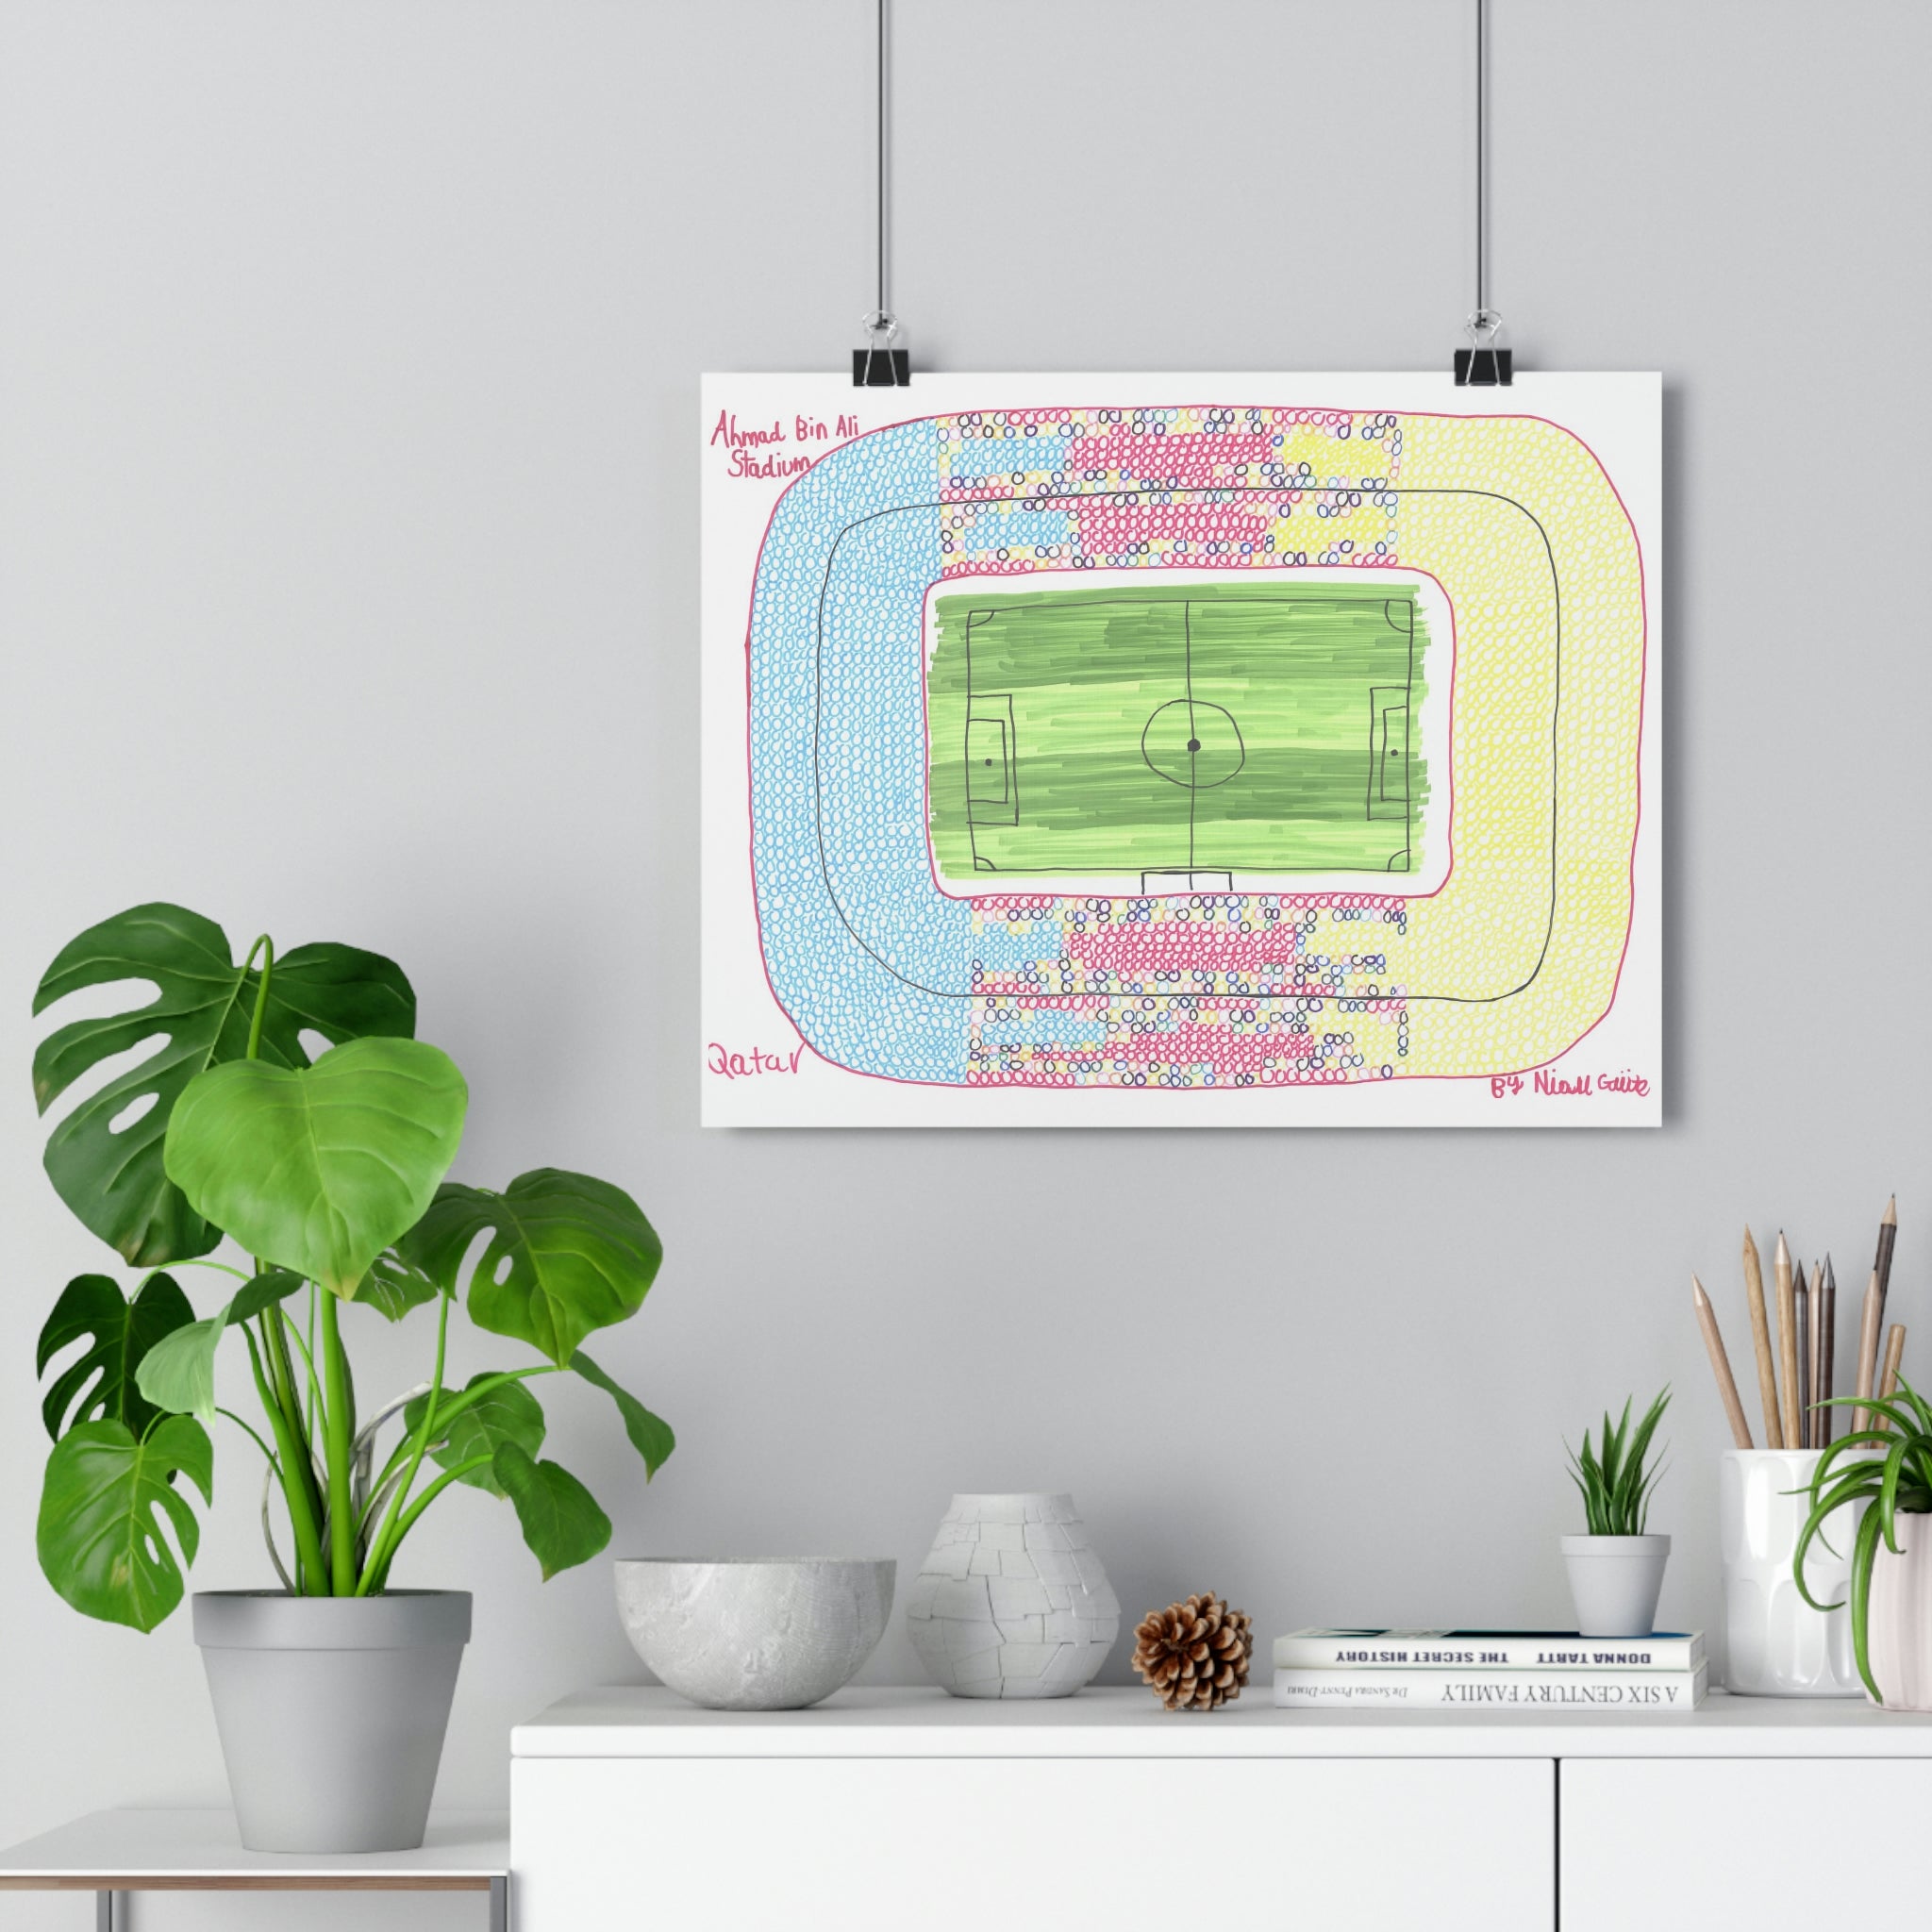 Ahmad Bin Ali Stadium - 2022 World Cup Special - Print